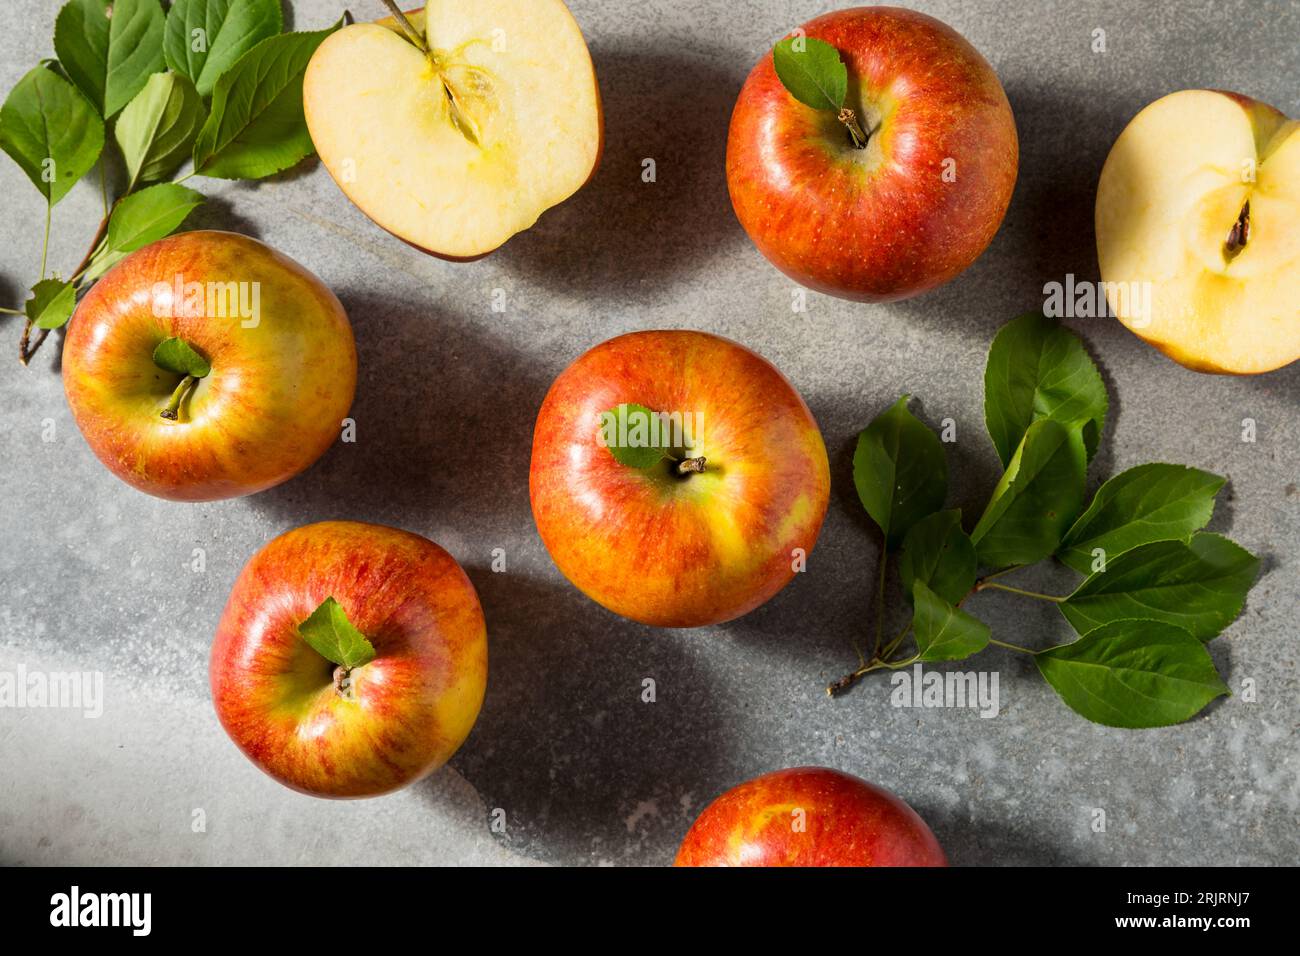 Pommes rouges biologiques Raw Envy dans une botte Banque D'Images